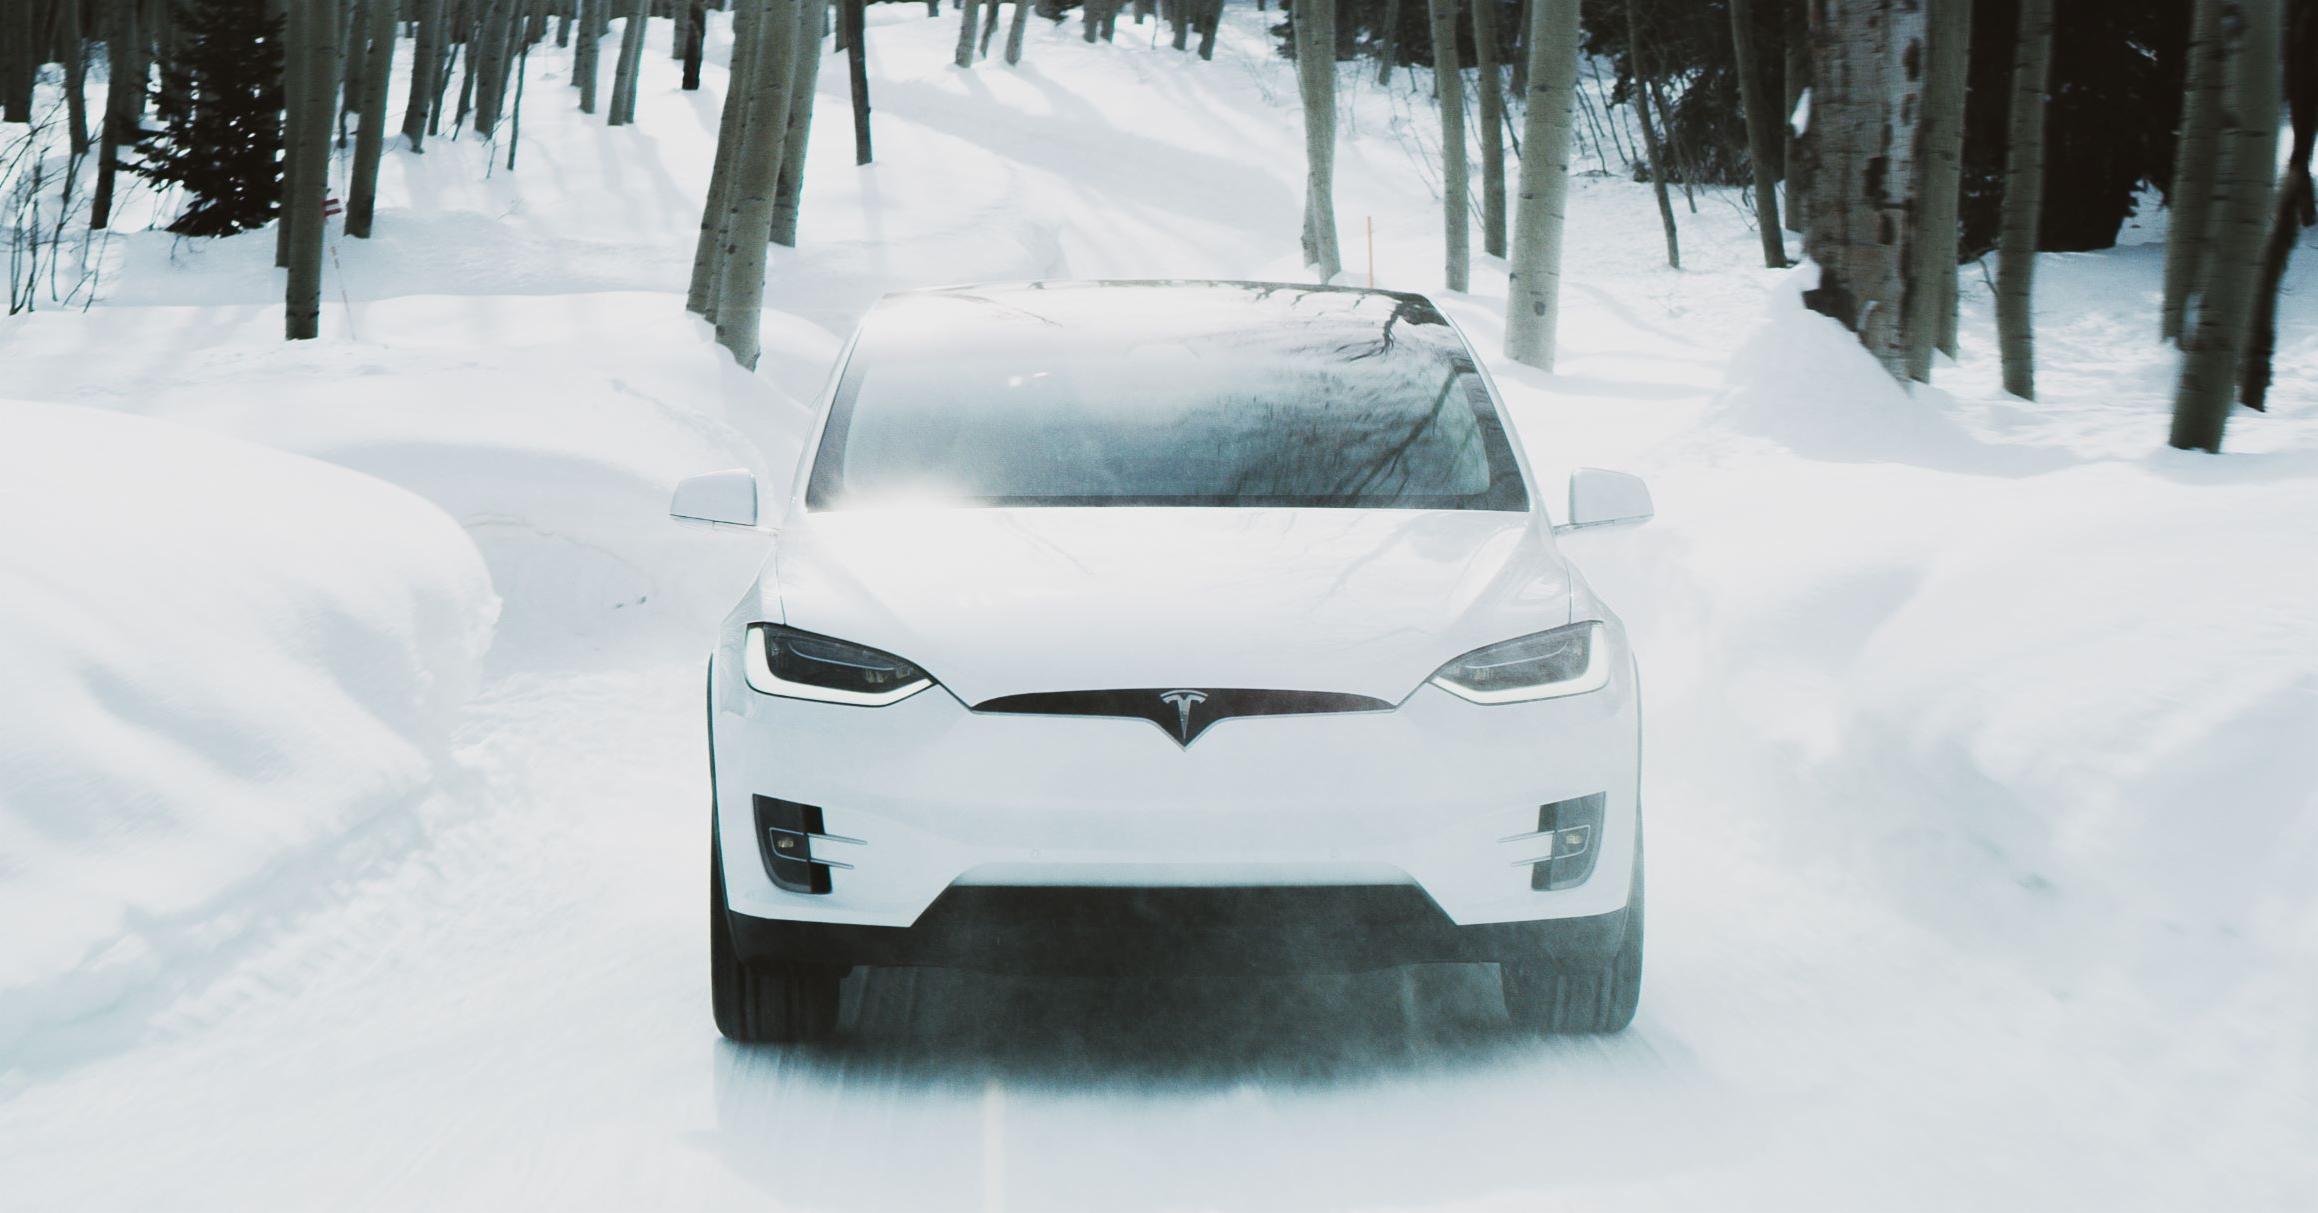 Corea del Sur multa a Tesla con 2,2 millones de dólares por falta de información sobre la reducida autonomía de los coches eléctricos a temperaturas bajo cero